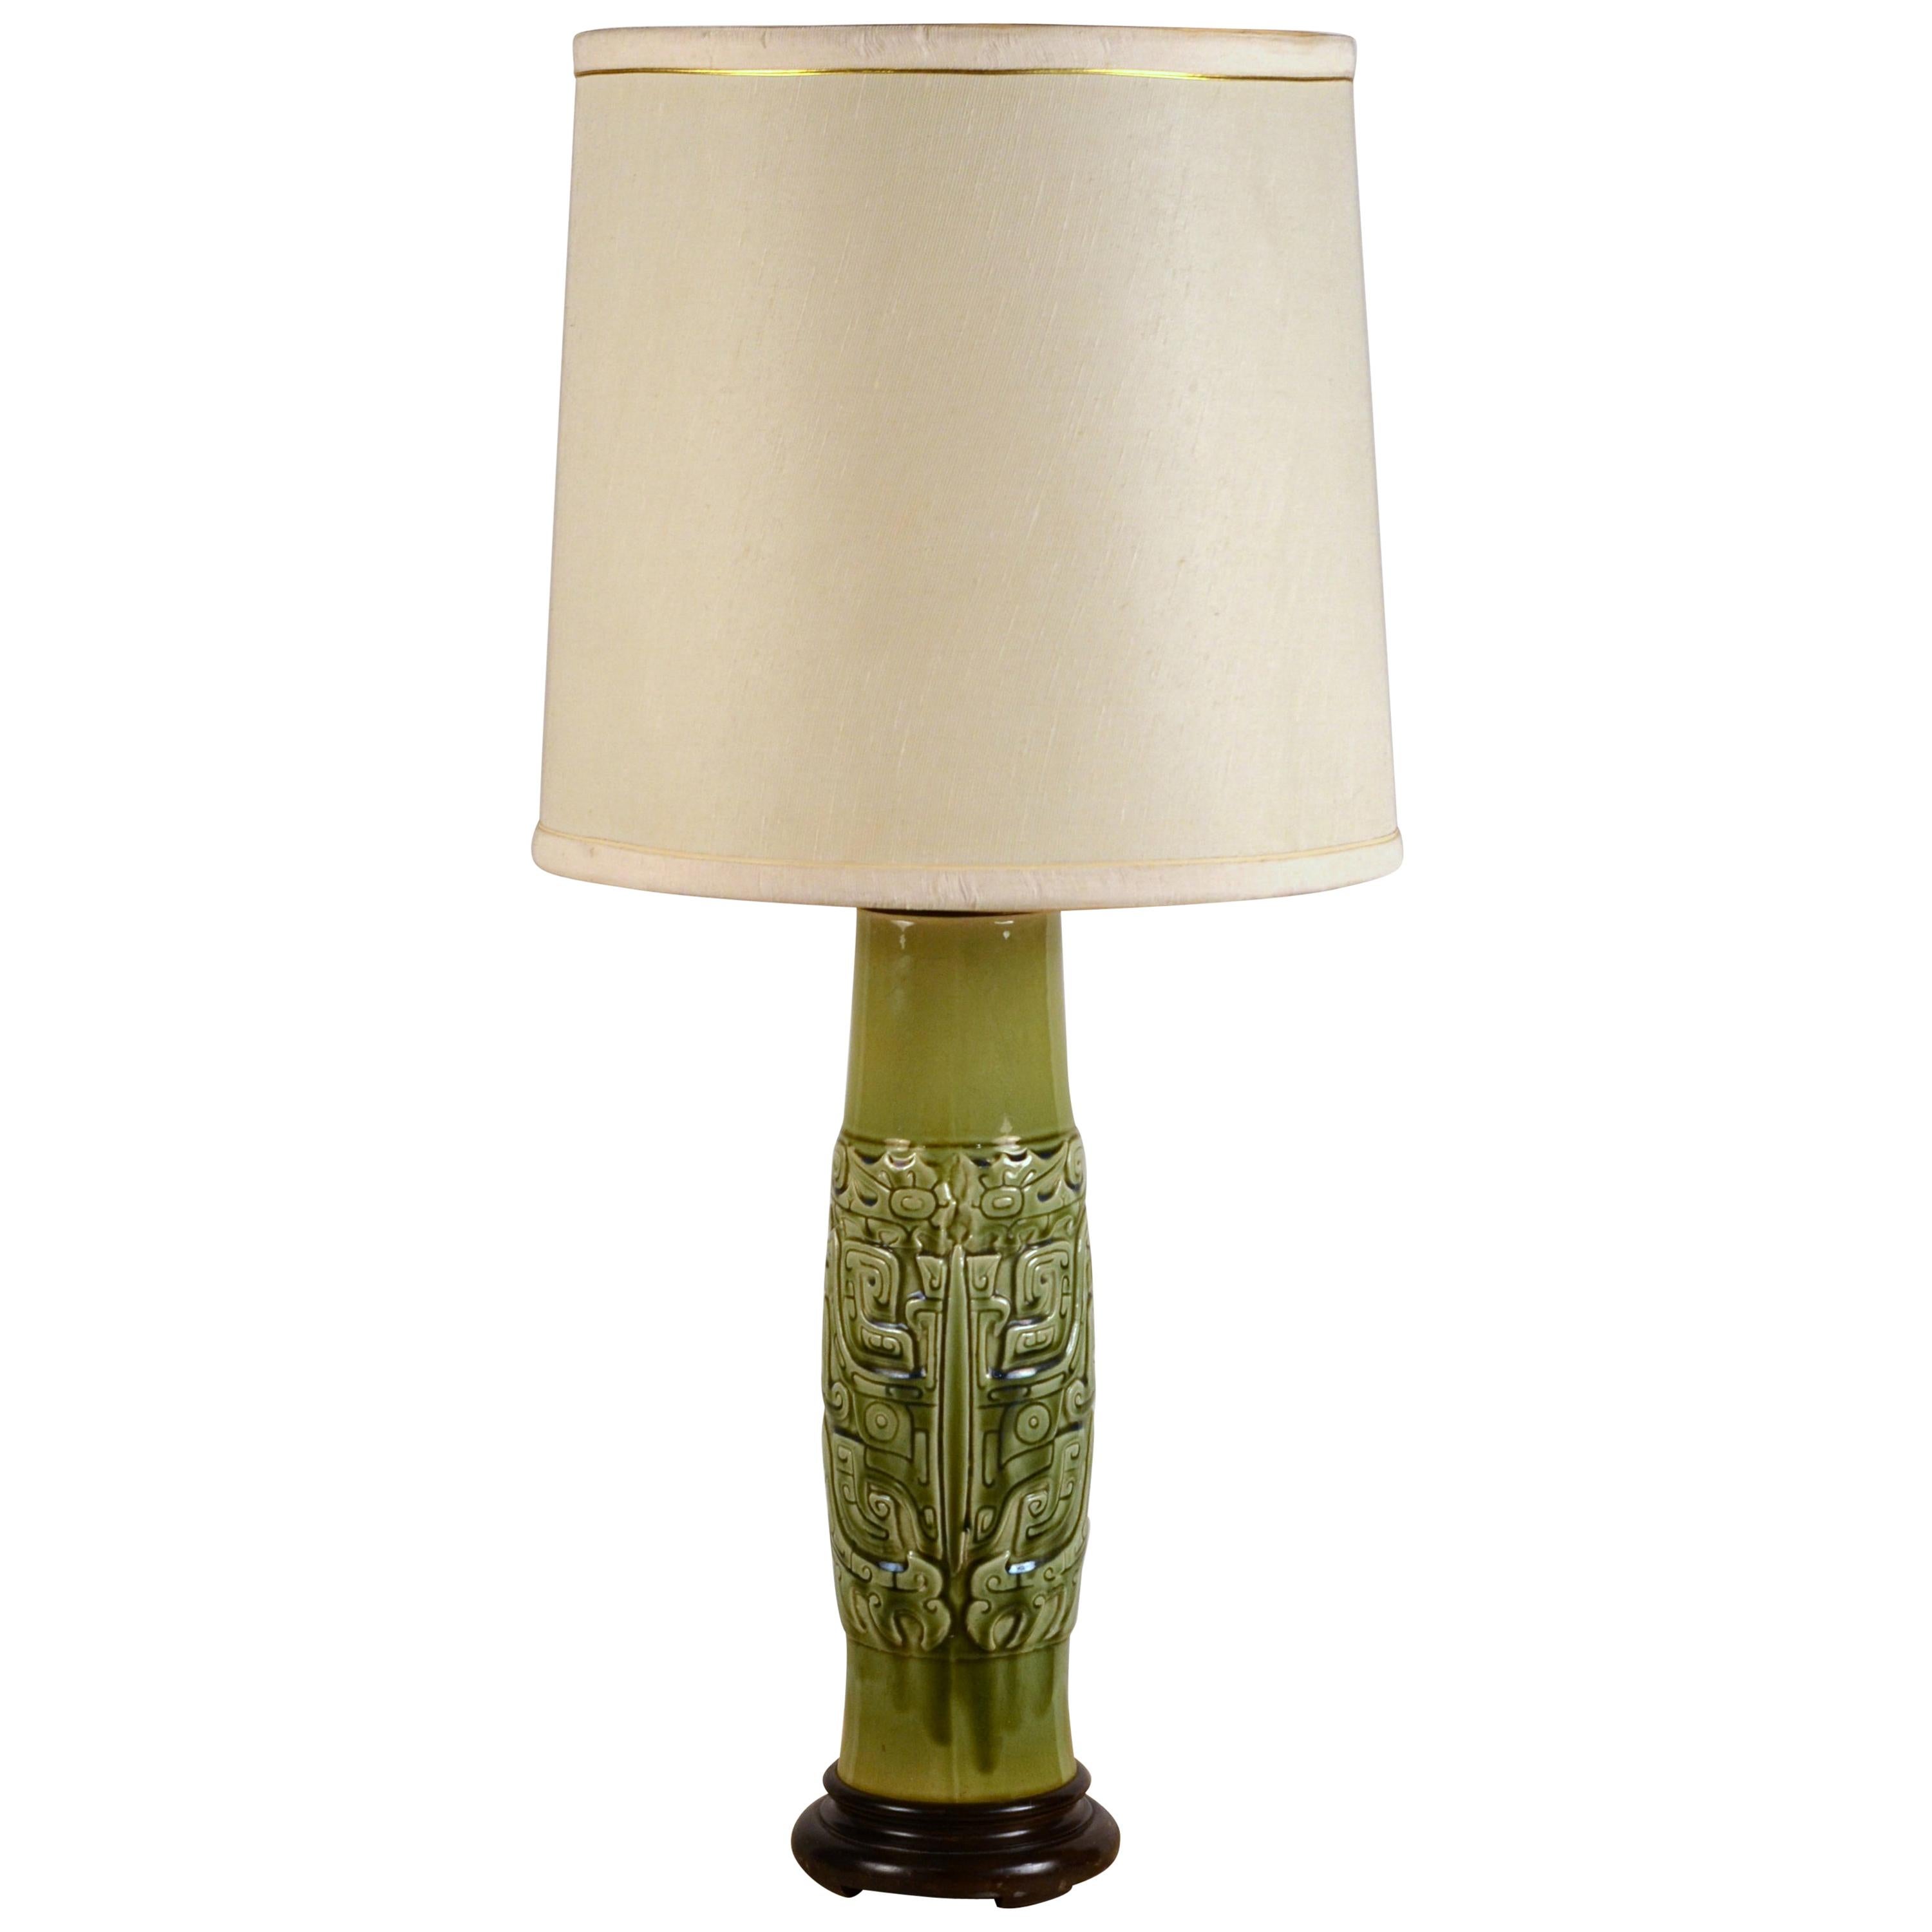 Elegant Mayan Inspired Ceramic Lamp with Original Shade